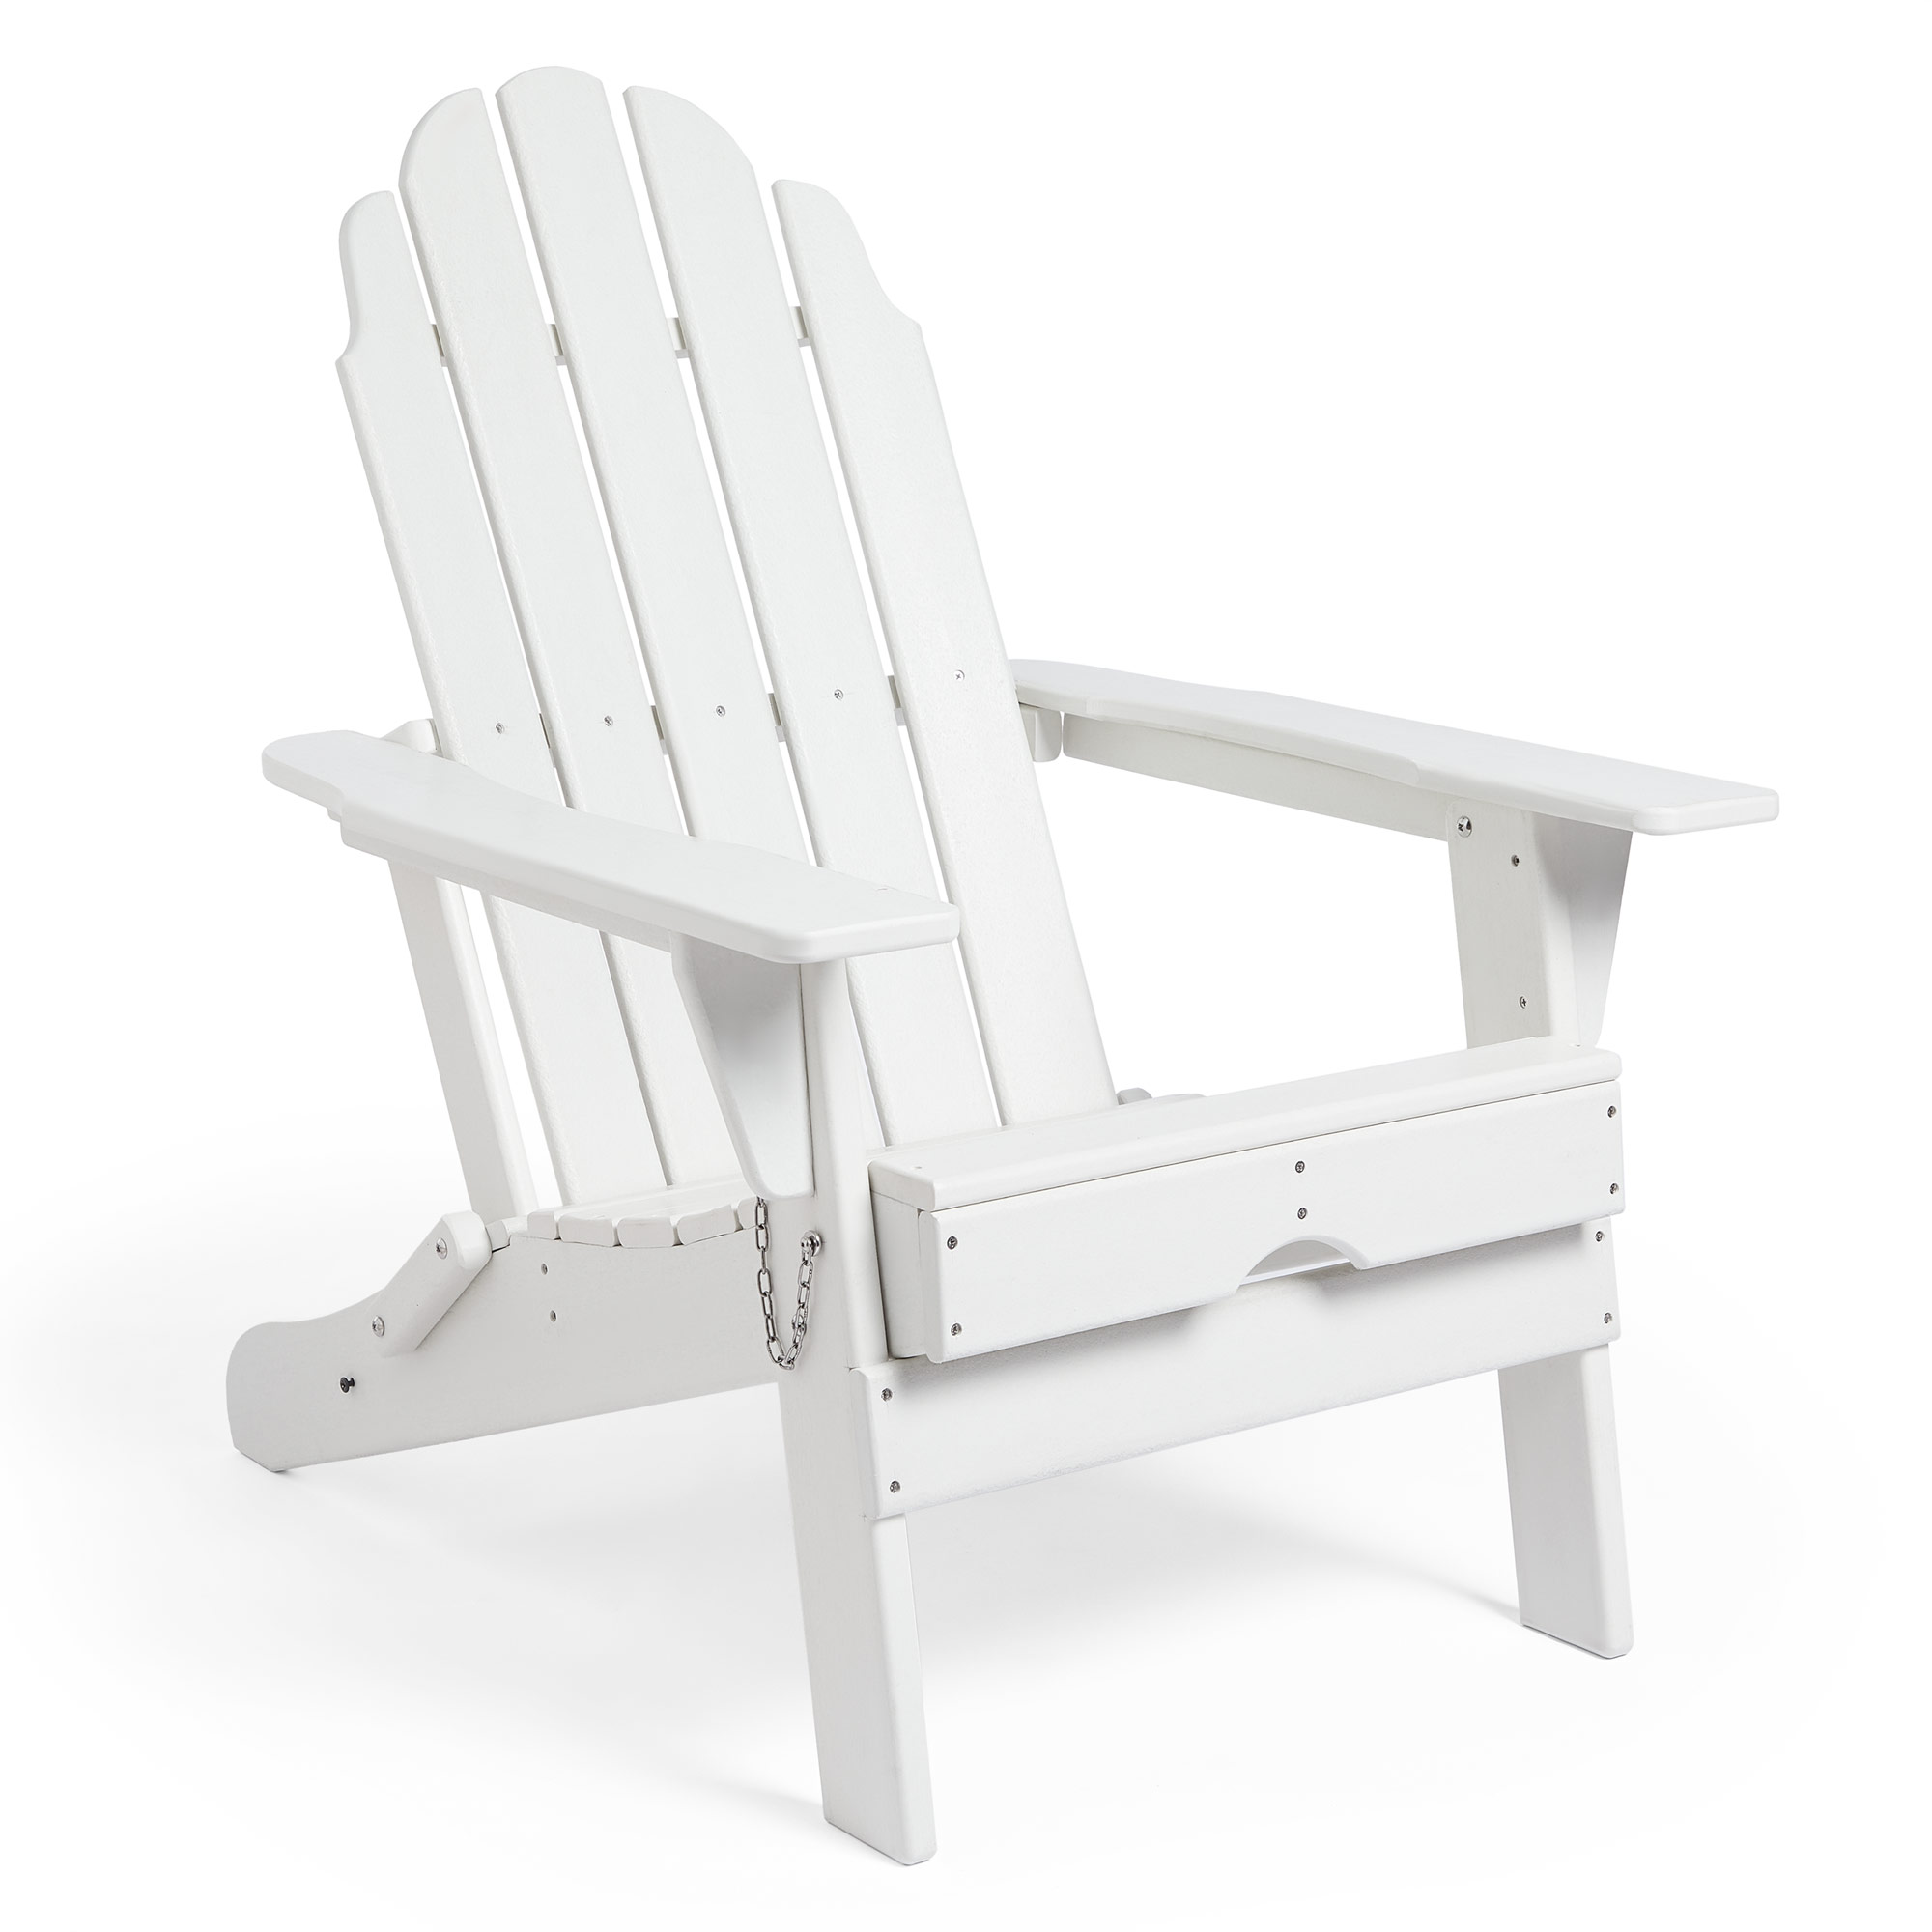 VonHaus White Folding Adirondack Chair